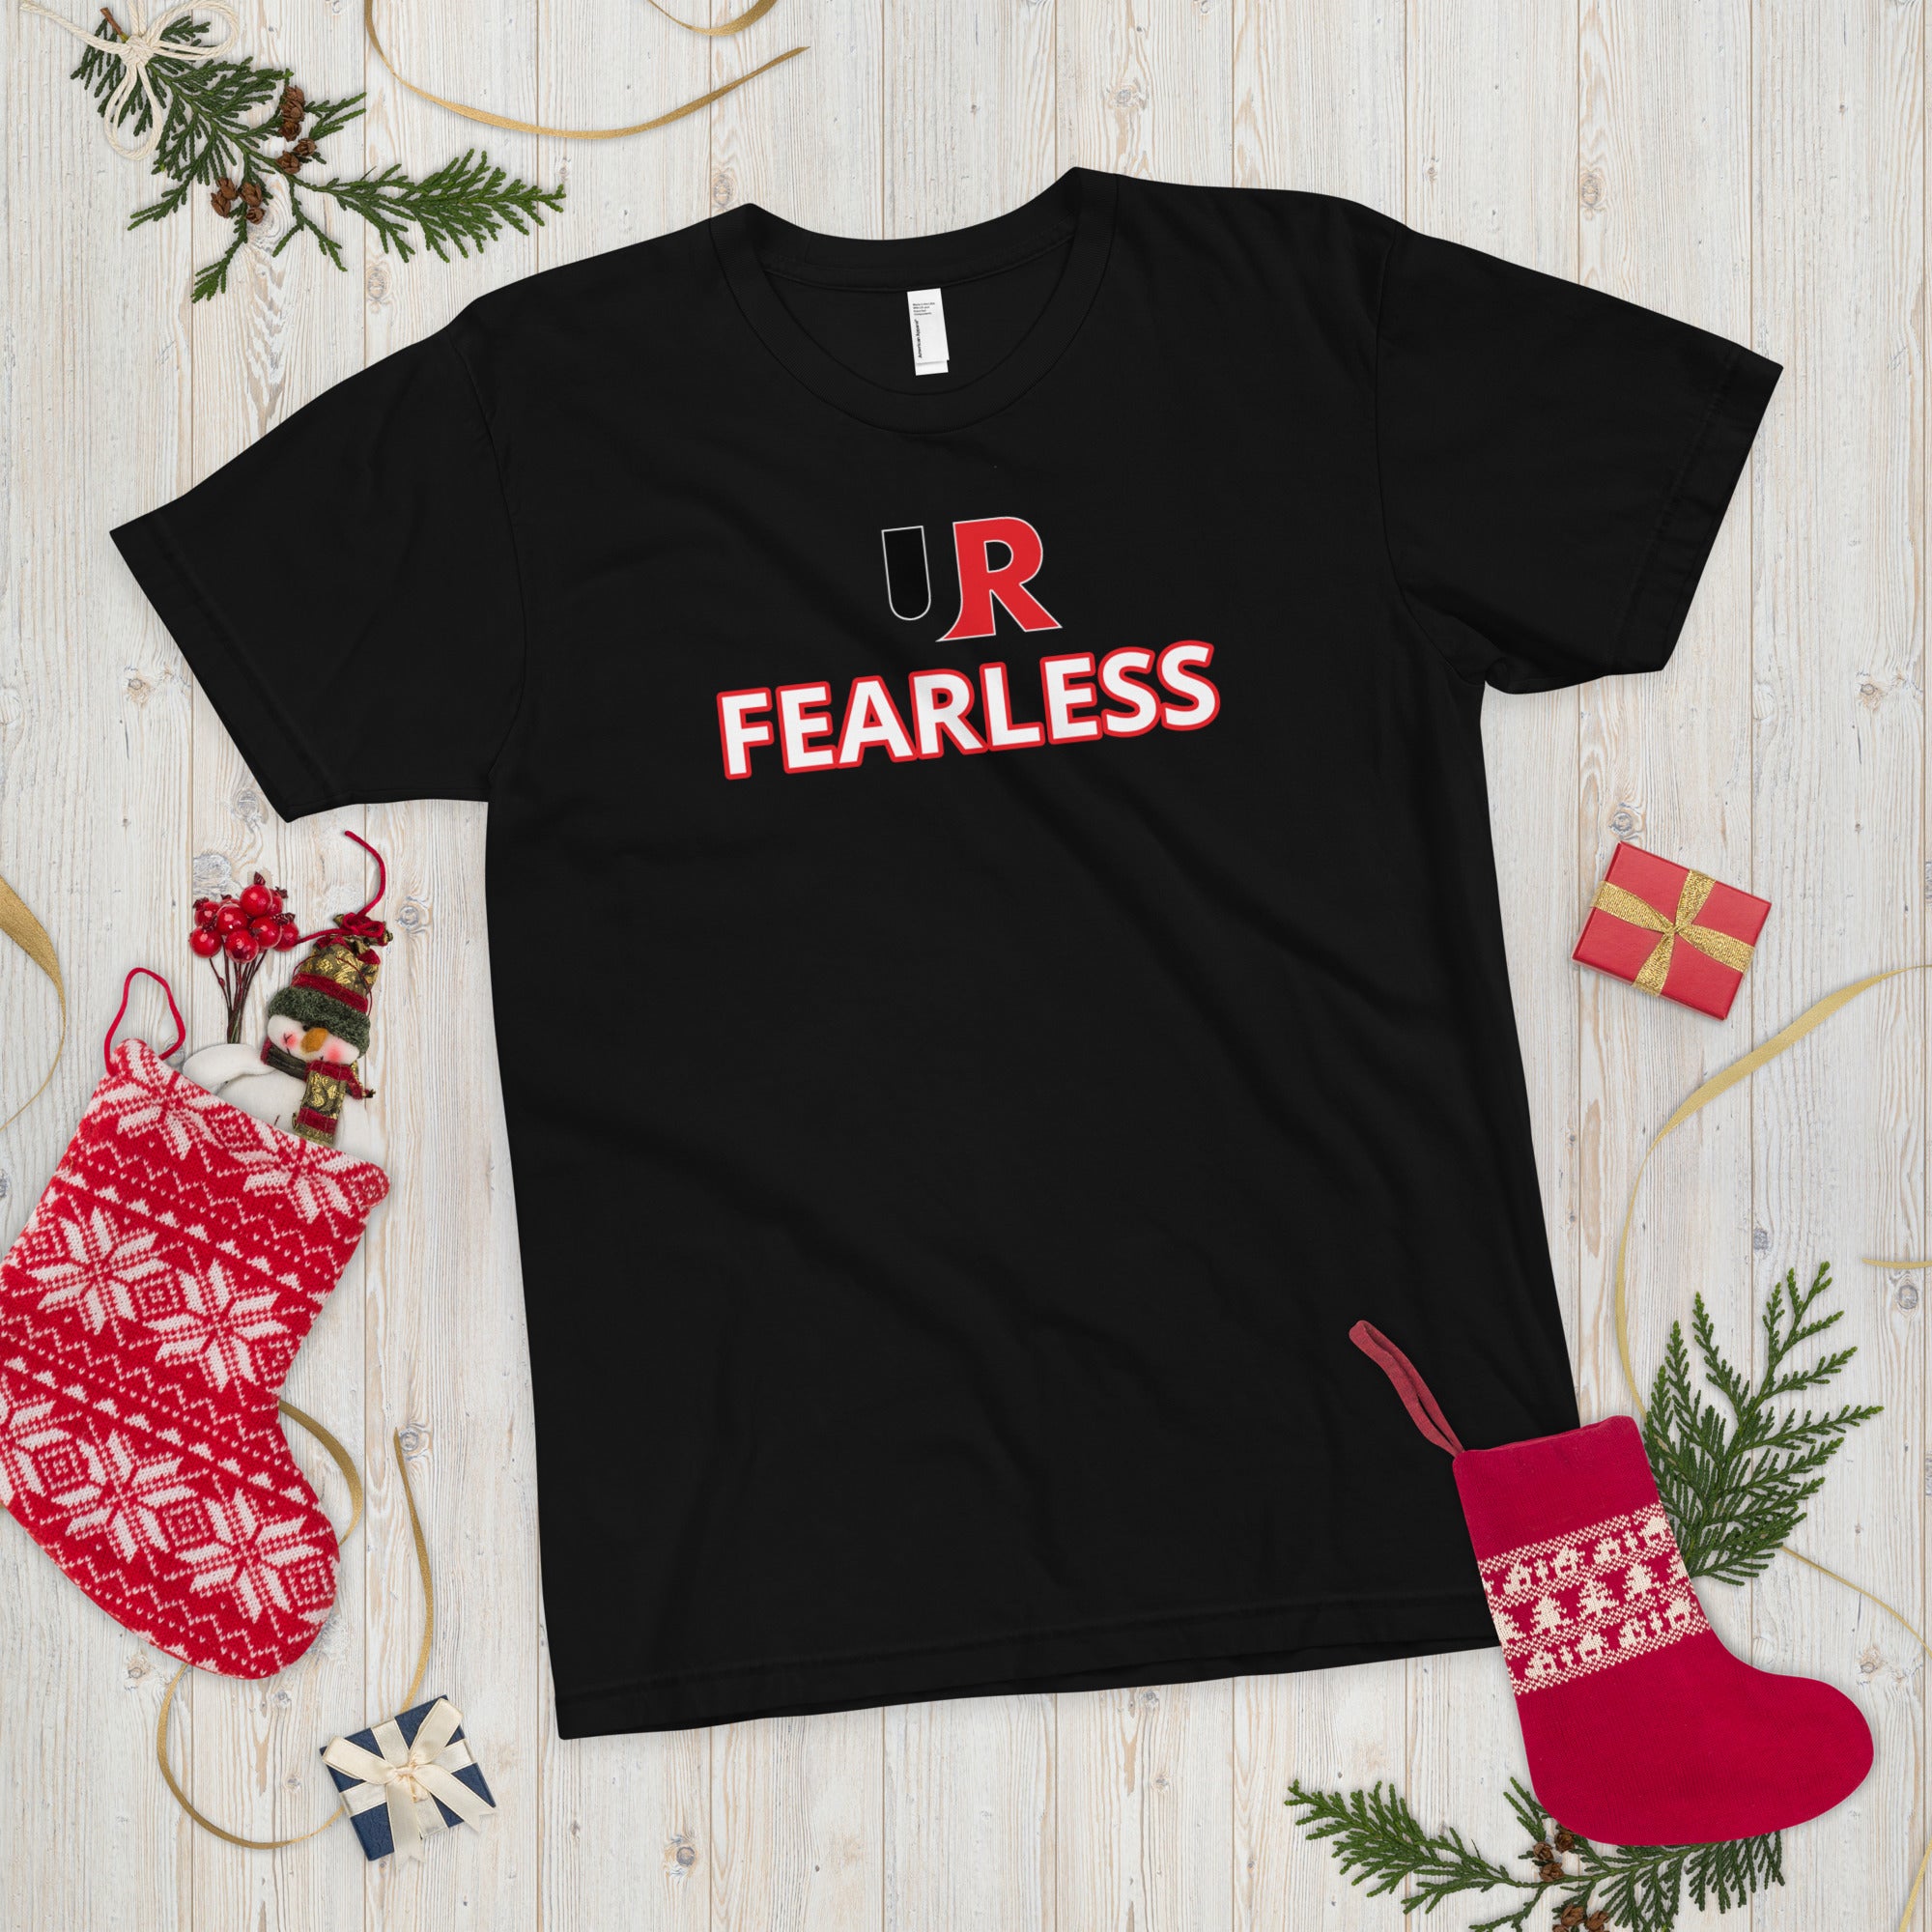 UR FEARLESS T-Shirt